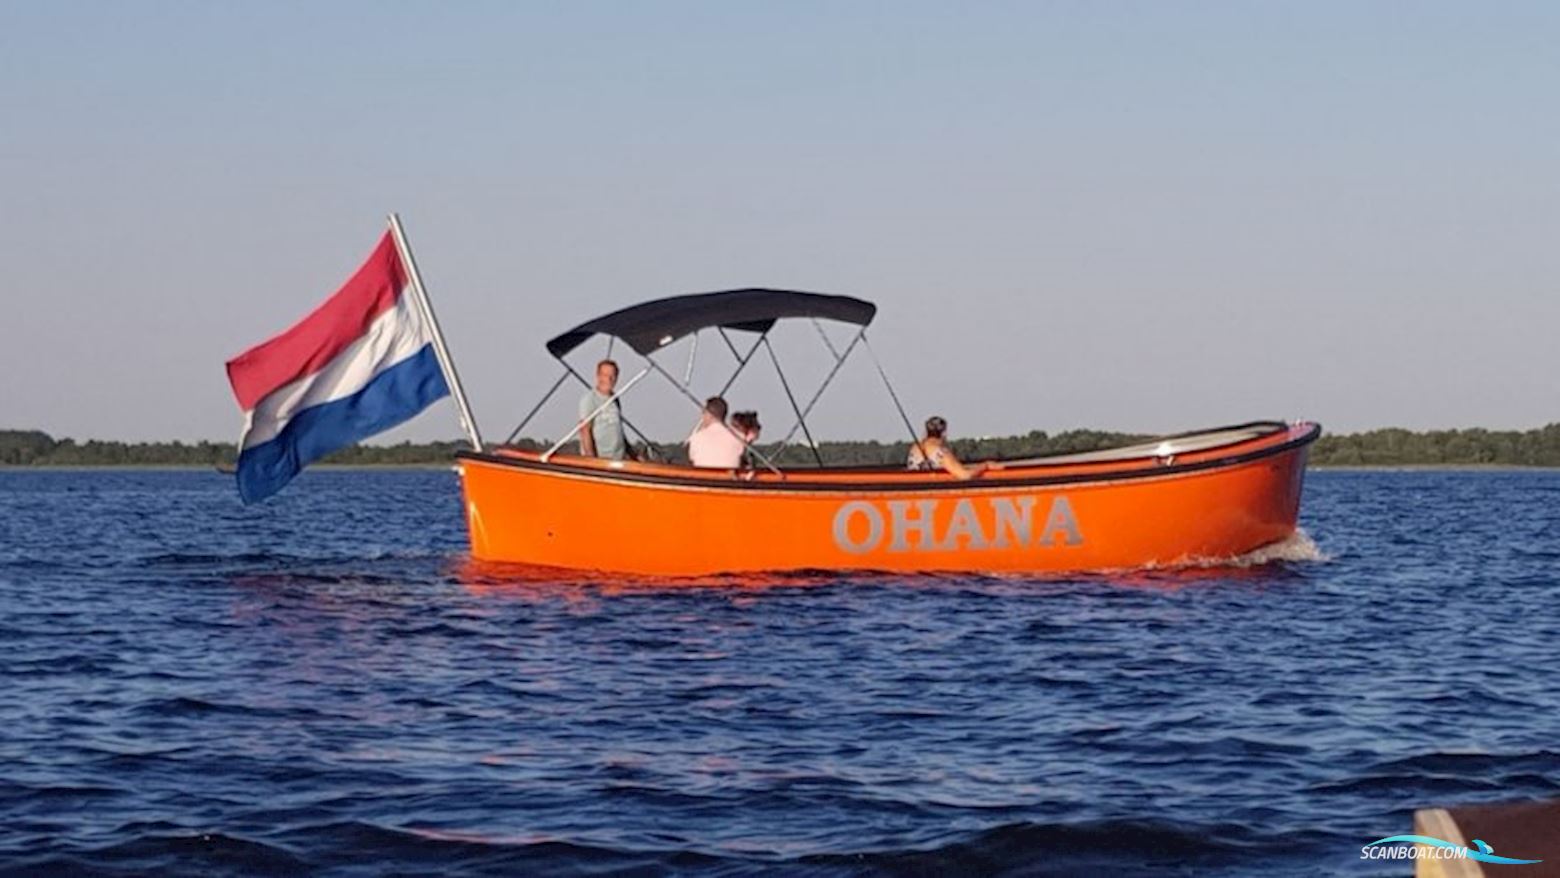 Harding 800 Motorboot 2021, mit Westerbeke motor, Niederlande